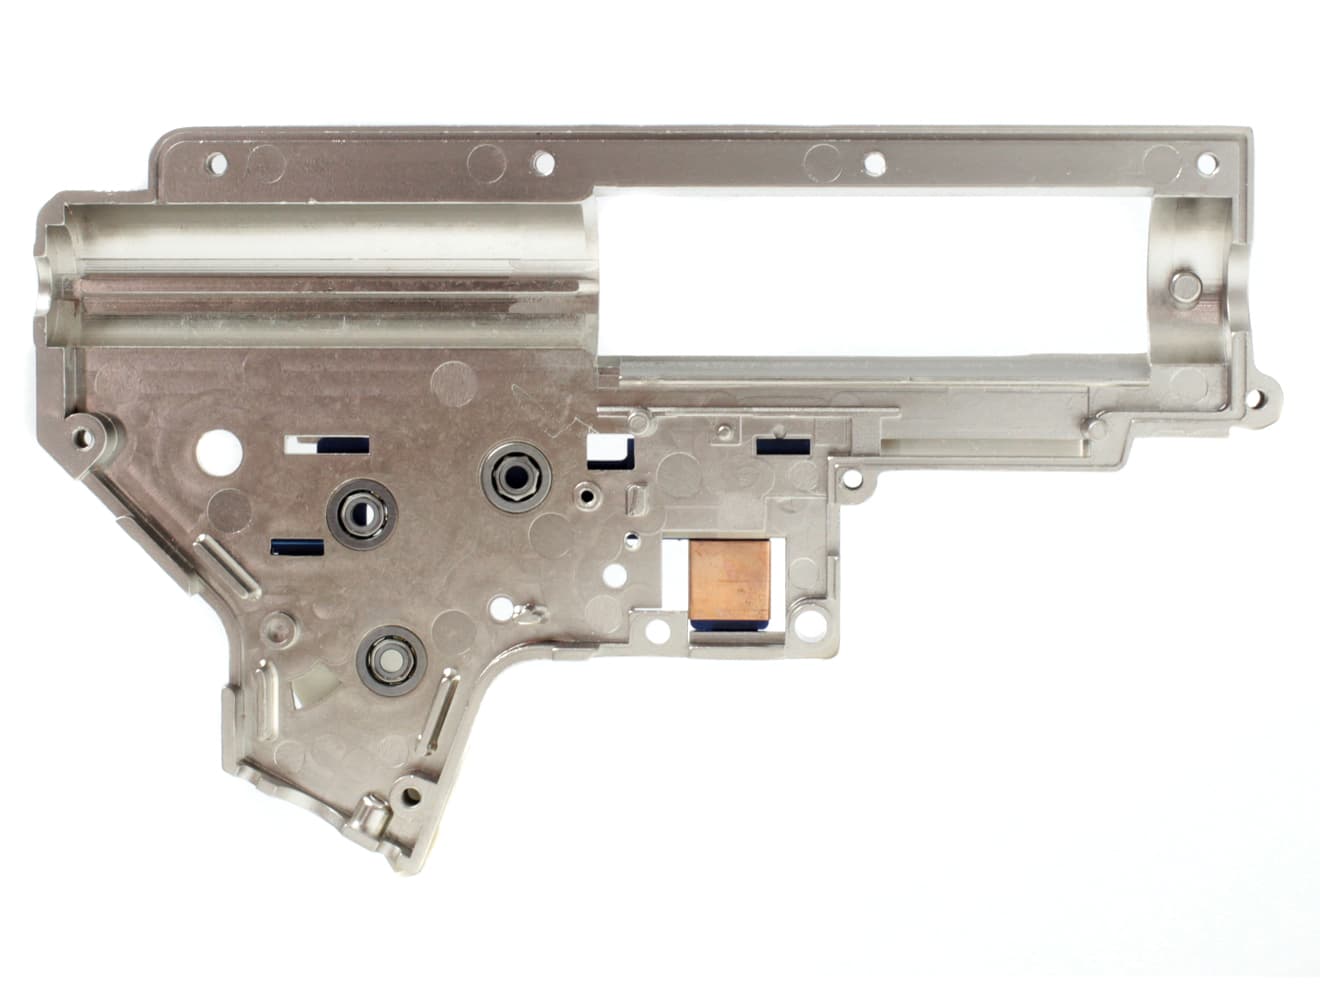 LONEX 8mm 強化メカボックスセット Ver2 M4/M16 [適合：Ver2 M4・M16